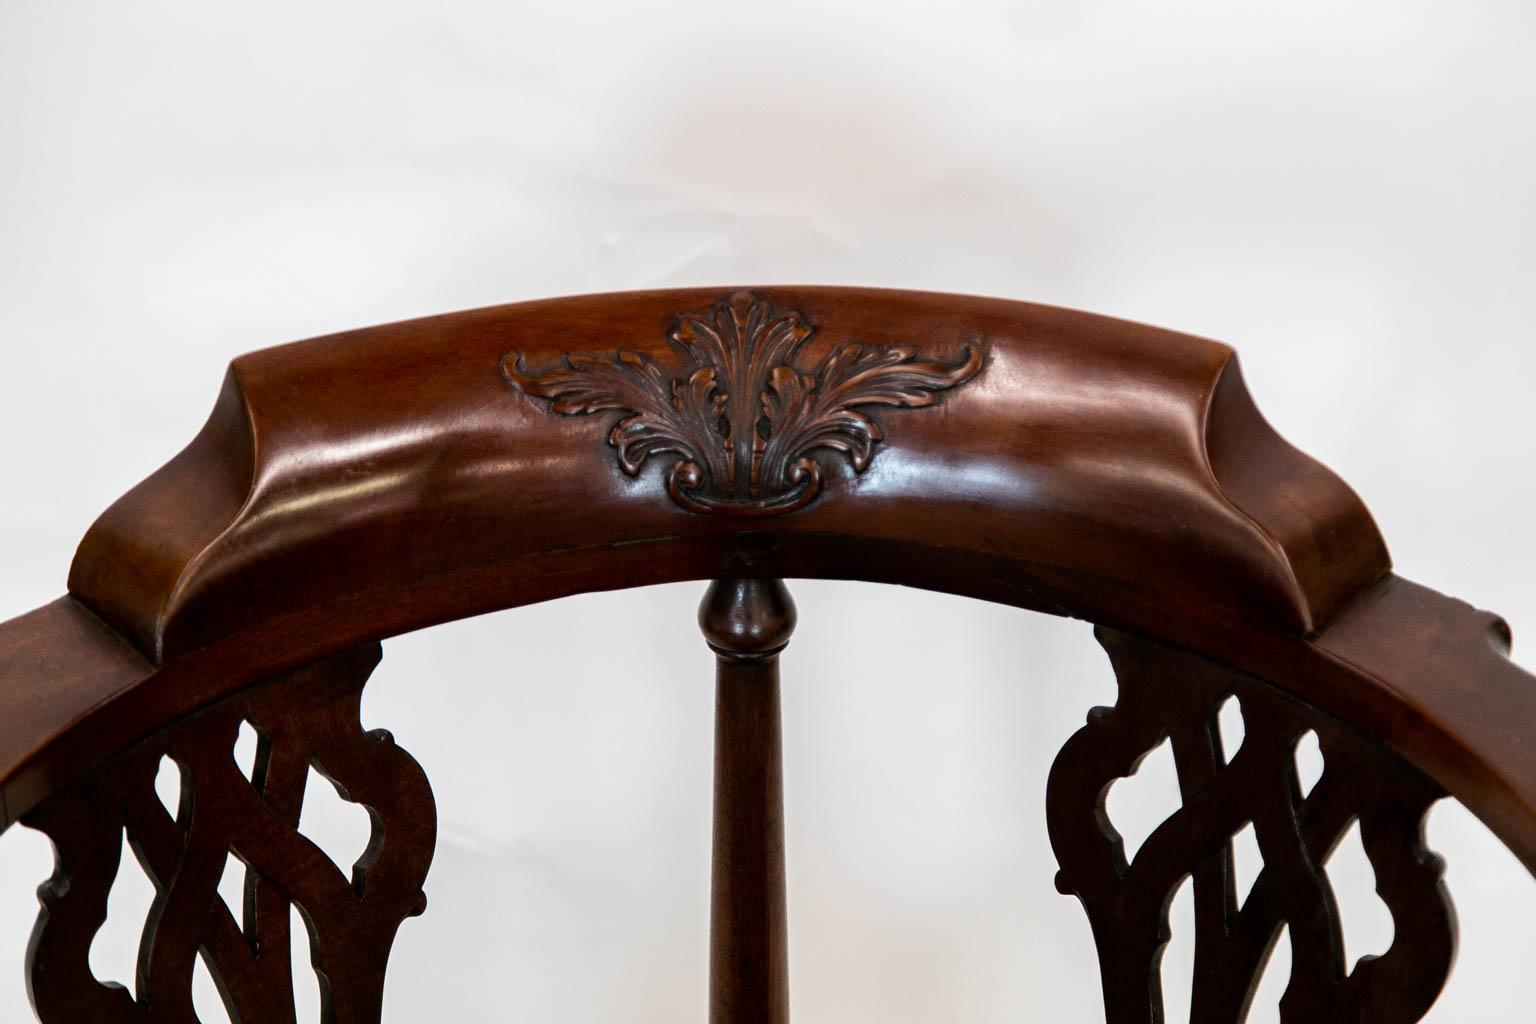 Les bras à volutes de cette chaise d'angle sont sculptés de feuilles d'arabesques. La traverse de la crête arrière est sculptée d'un motif floral en haut relief. Les éclisses arrière sont percées et présentent une sculpture entrelacée. Les pieds